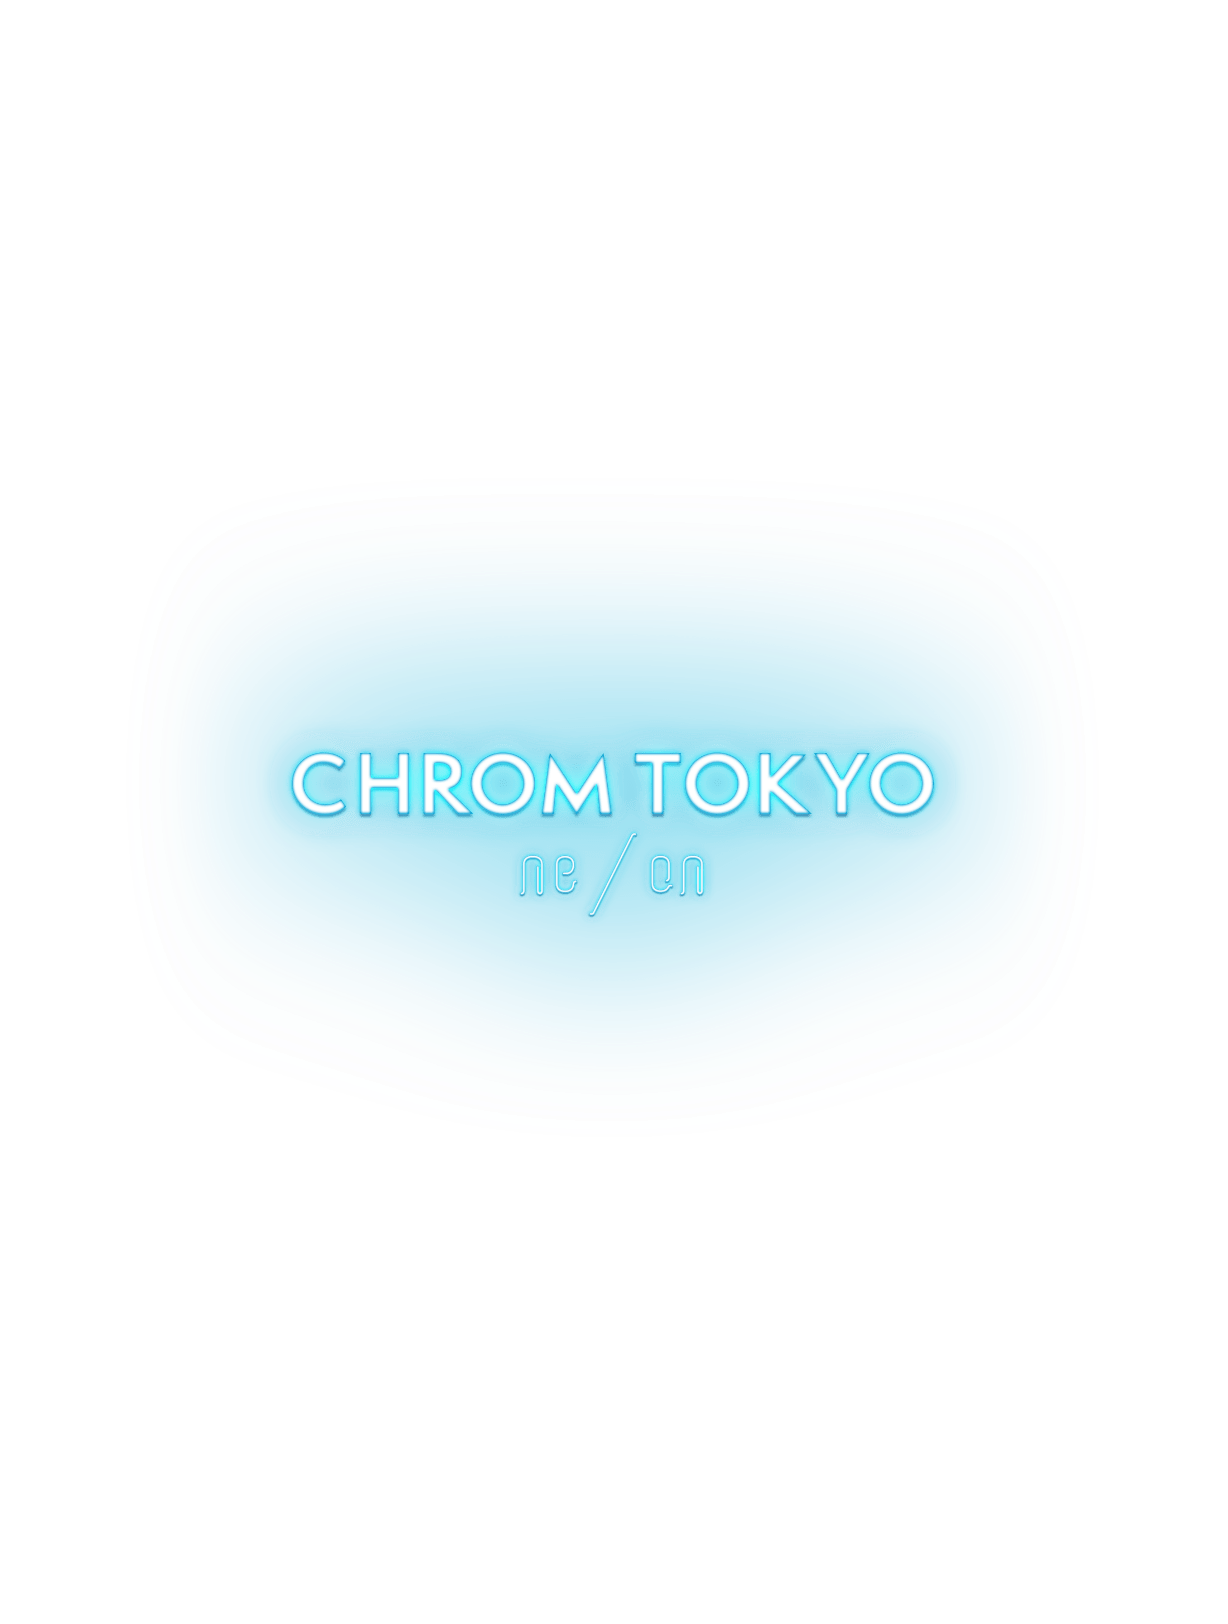 CHROM TOKYO ne/on